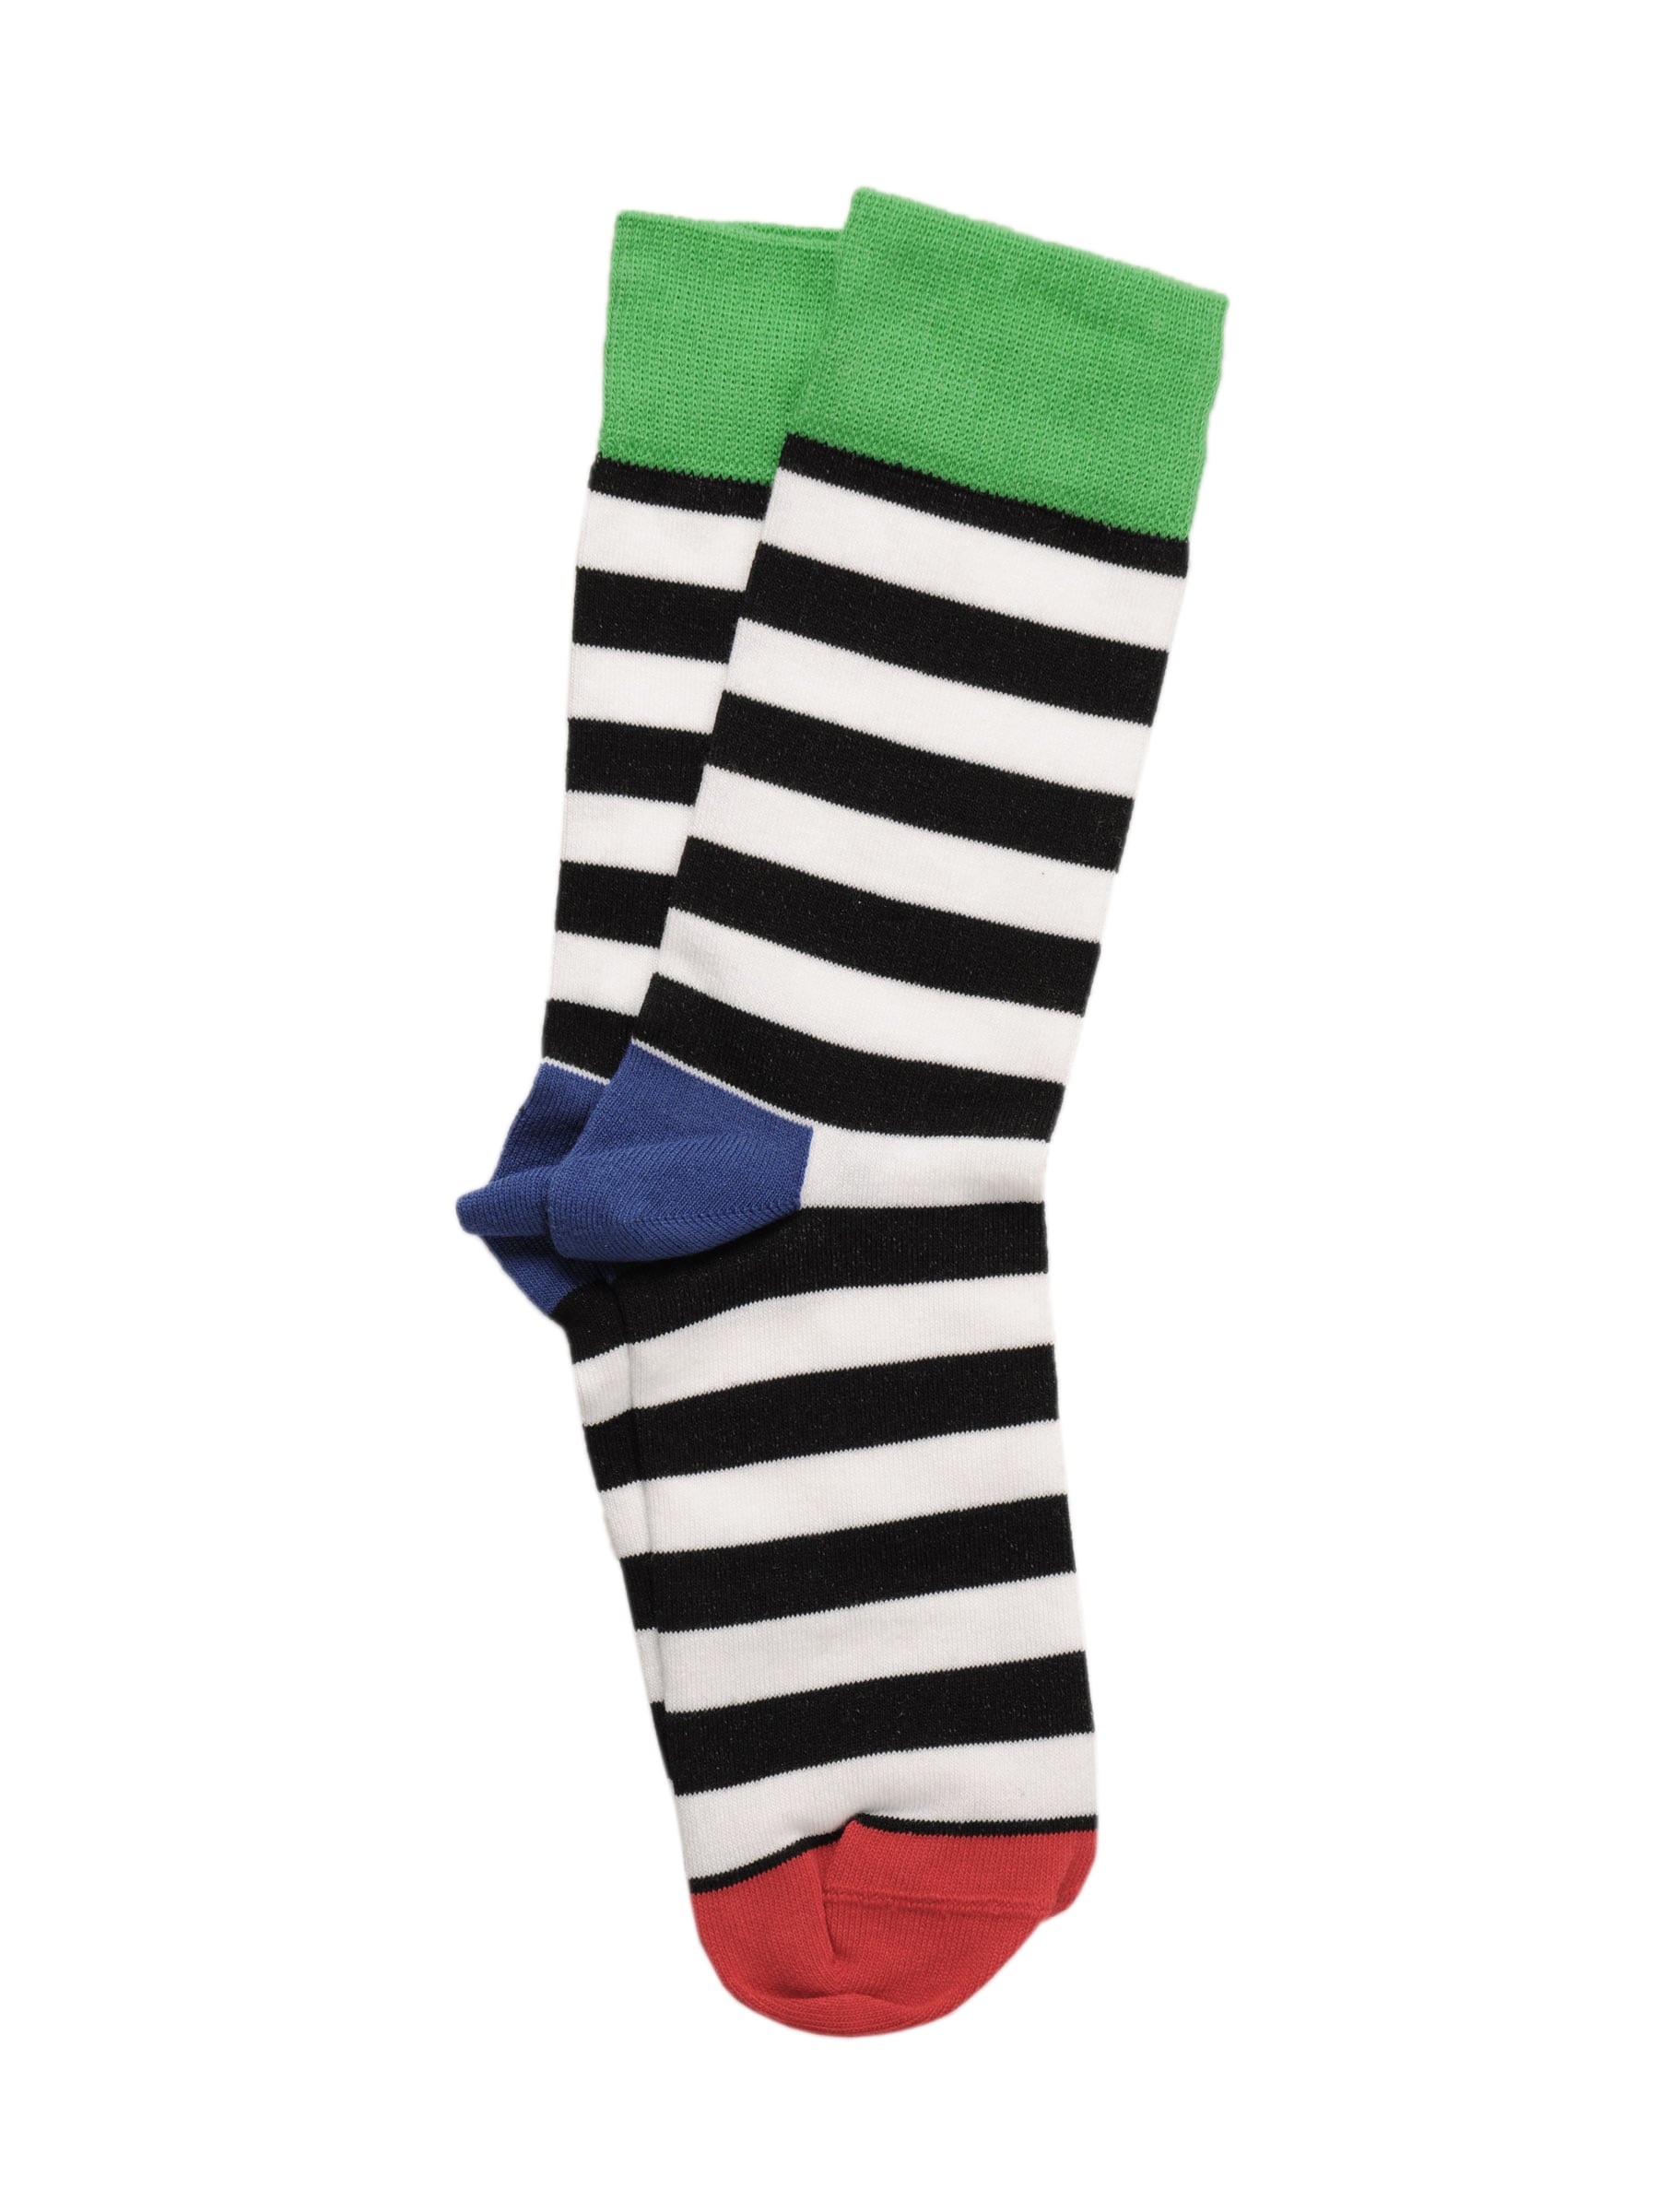 United Colors of Benetton Men Stripes Green Socks